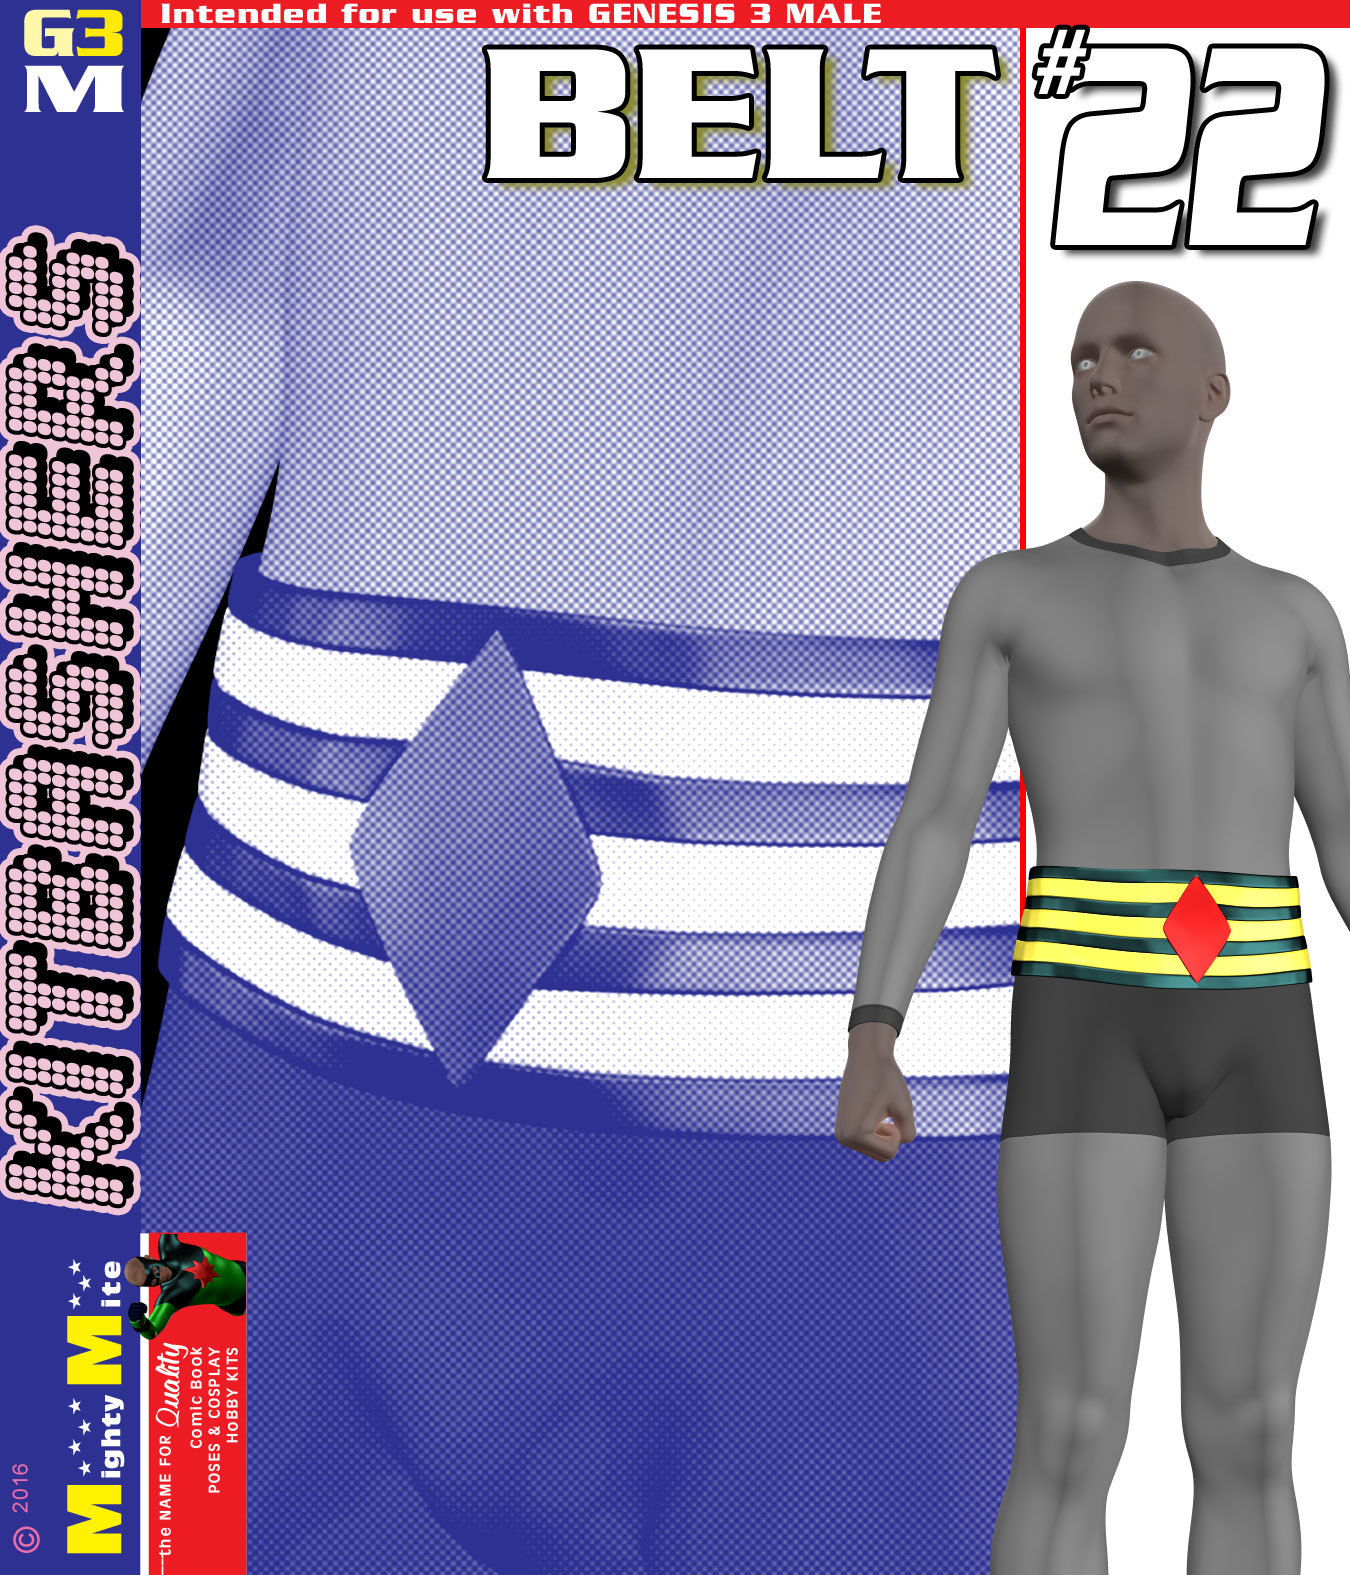 Belt 022 MMKBG3M by: MightyMite, 3D Models by Daz 3D